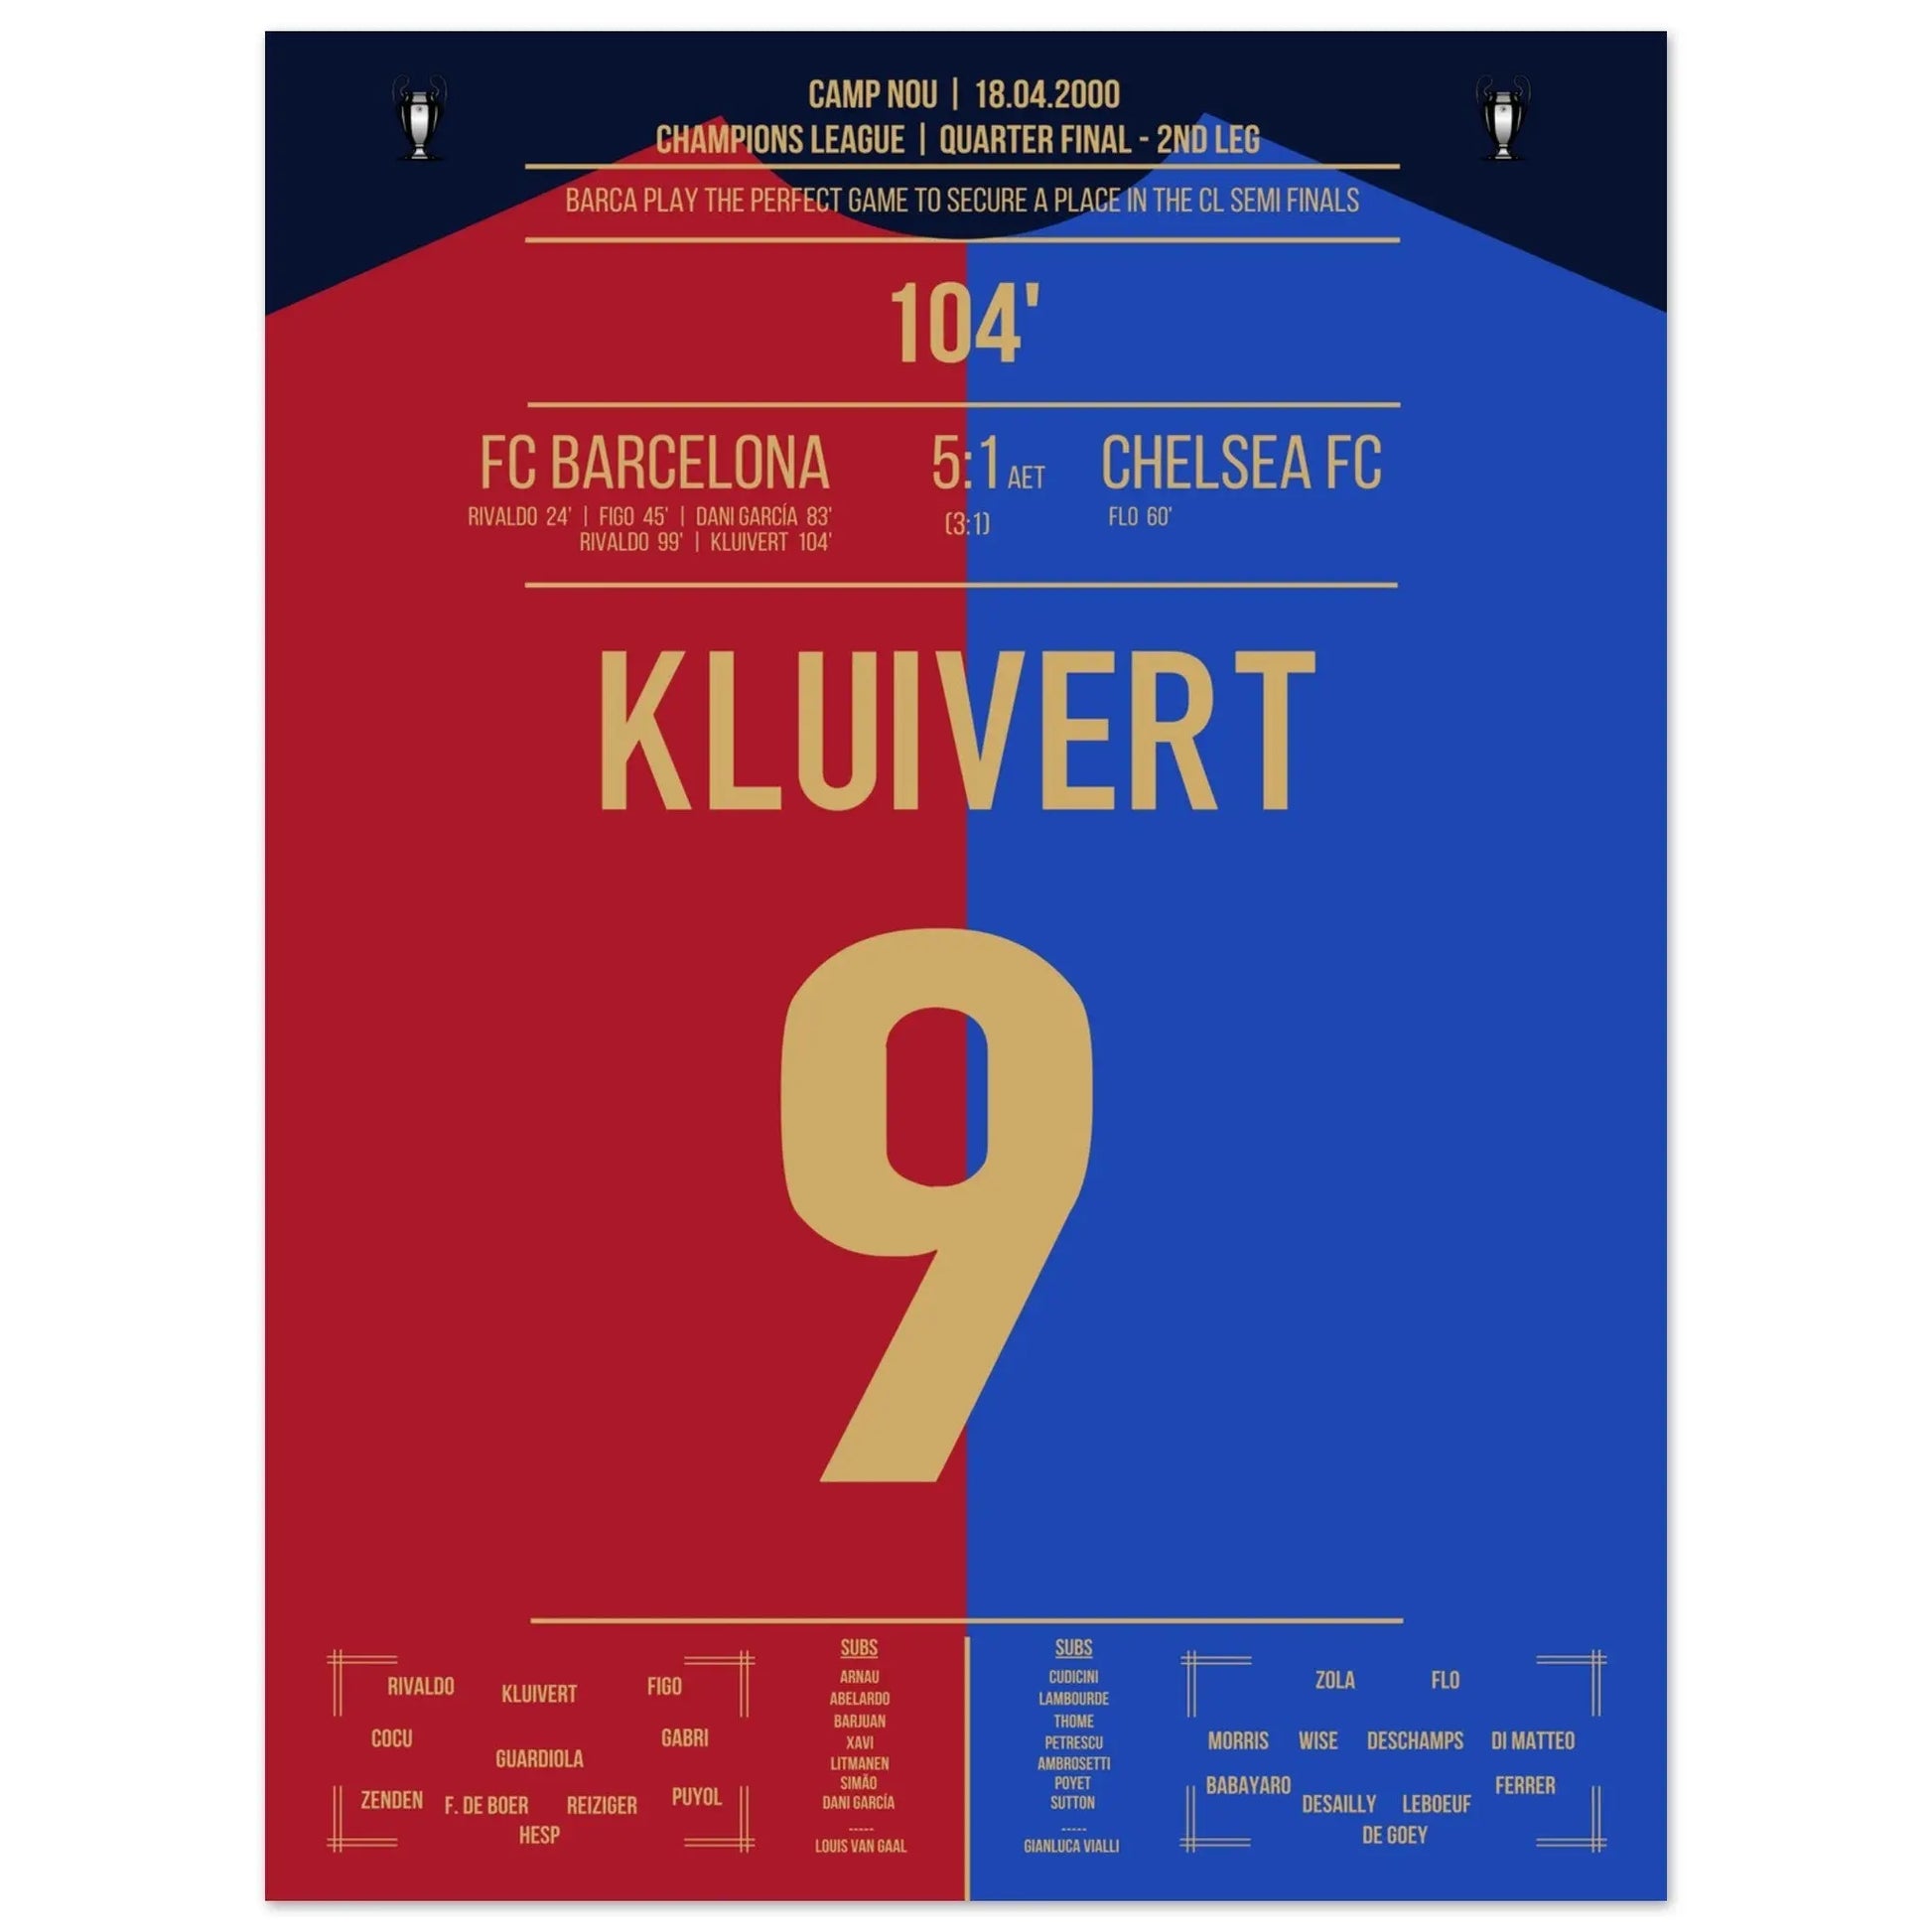 Kluivert's Tor in Barca's "Remontada" gegen Chelsea in 2000 45x60-cm-18x24-Ohne-Rahmen